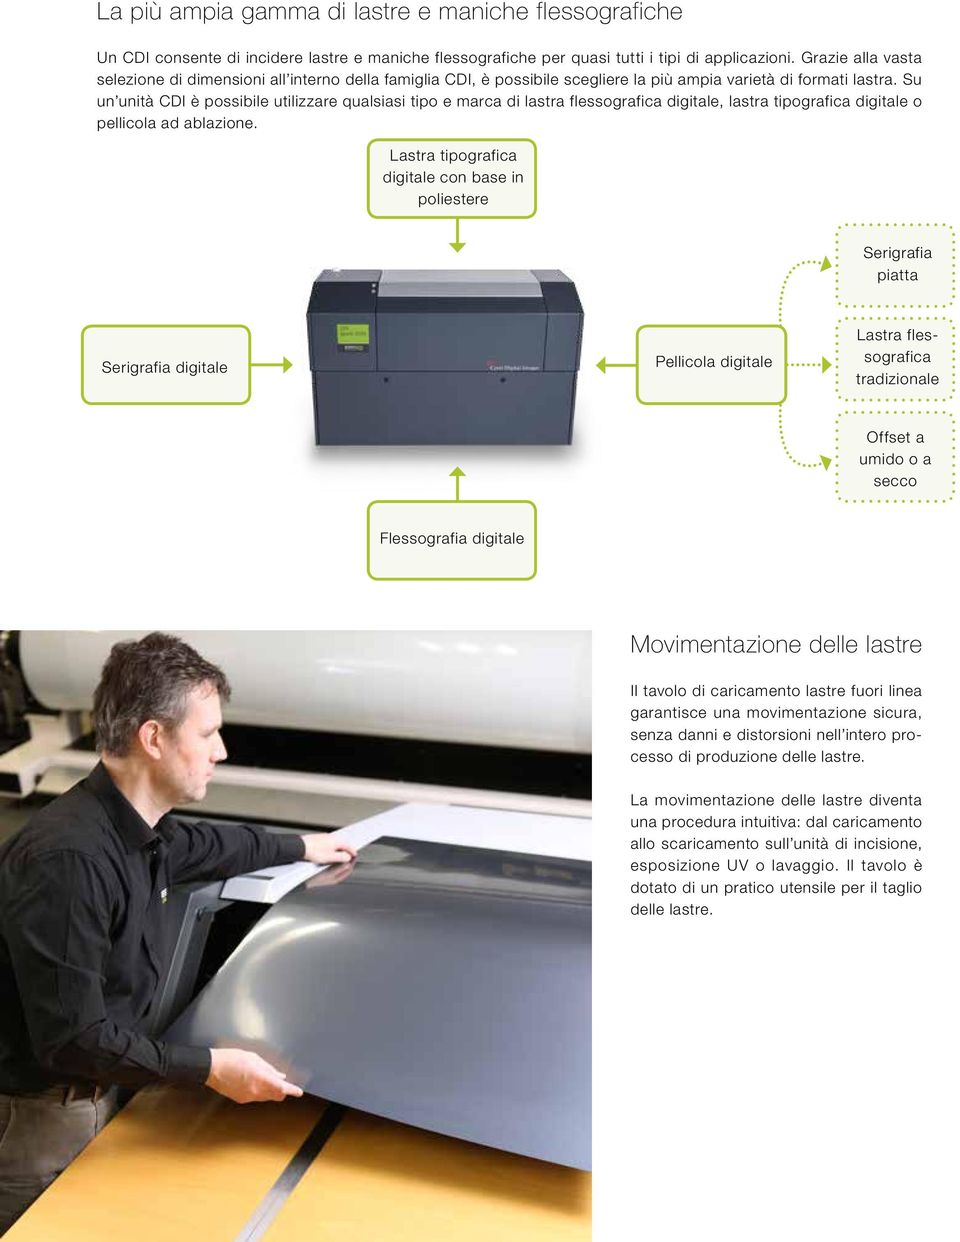 Su un unità CDI è possibile utilizzare qualsiasi tipo e marca di lastra flessografica digitale, lastra tipografica digitale o pellicola ad ablazione.